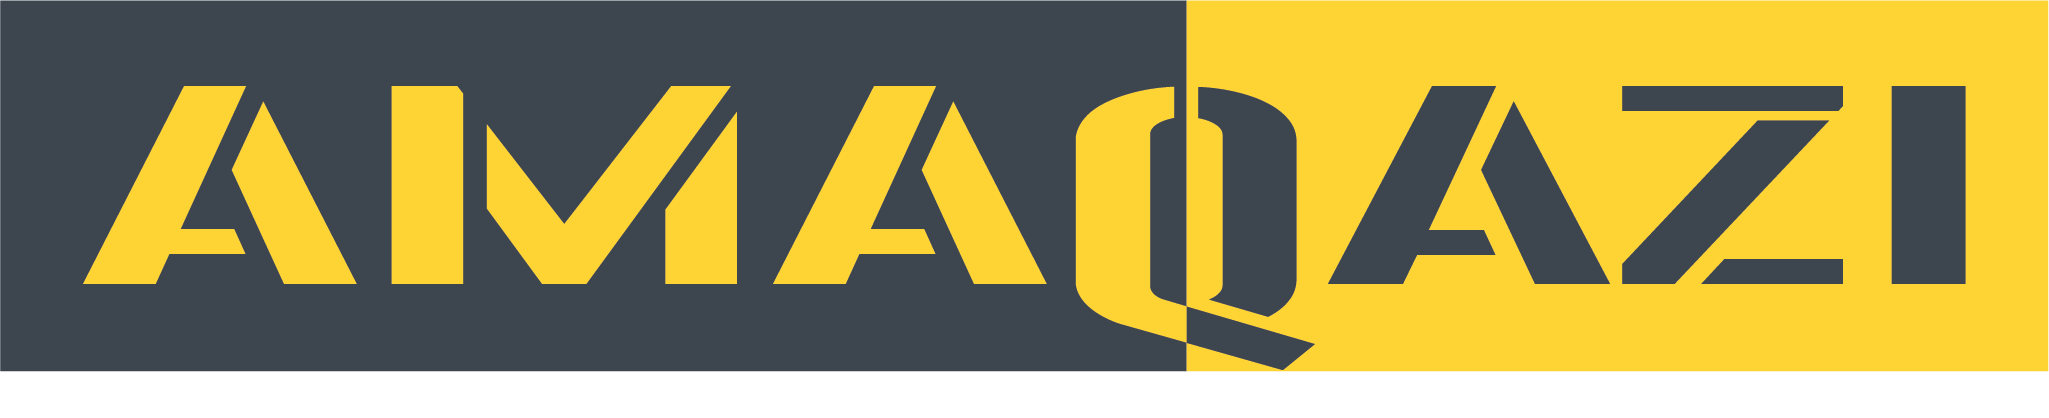 amaqazi logo